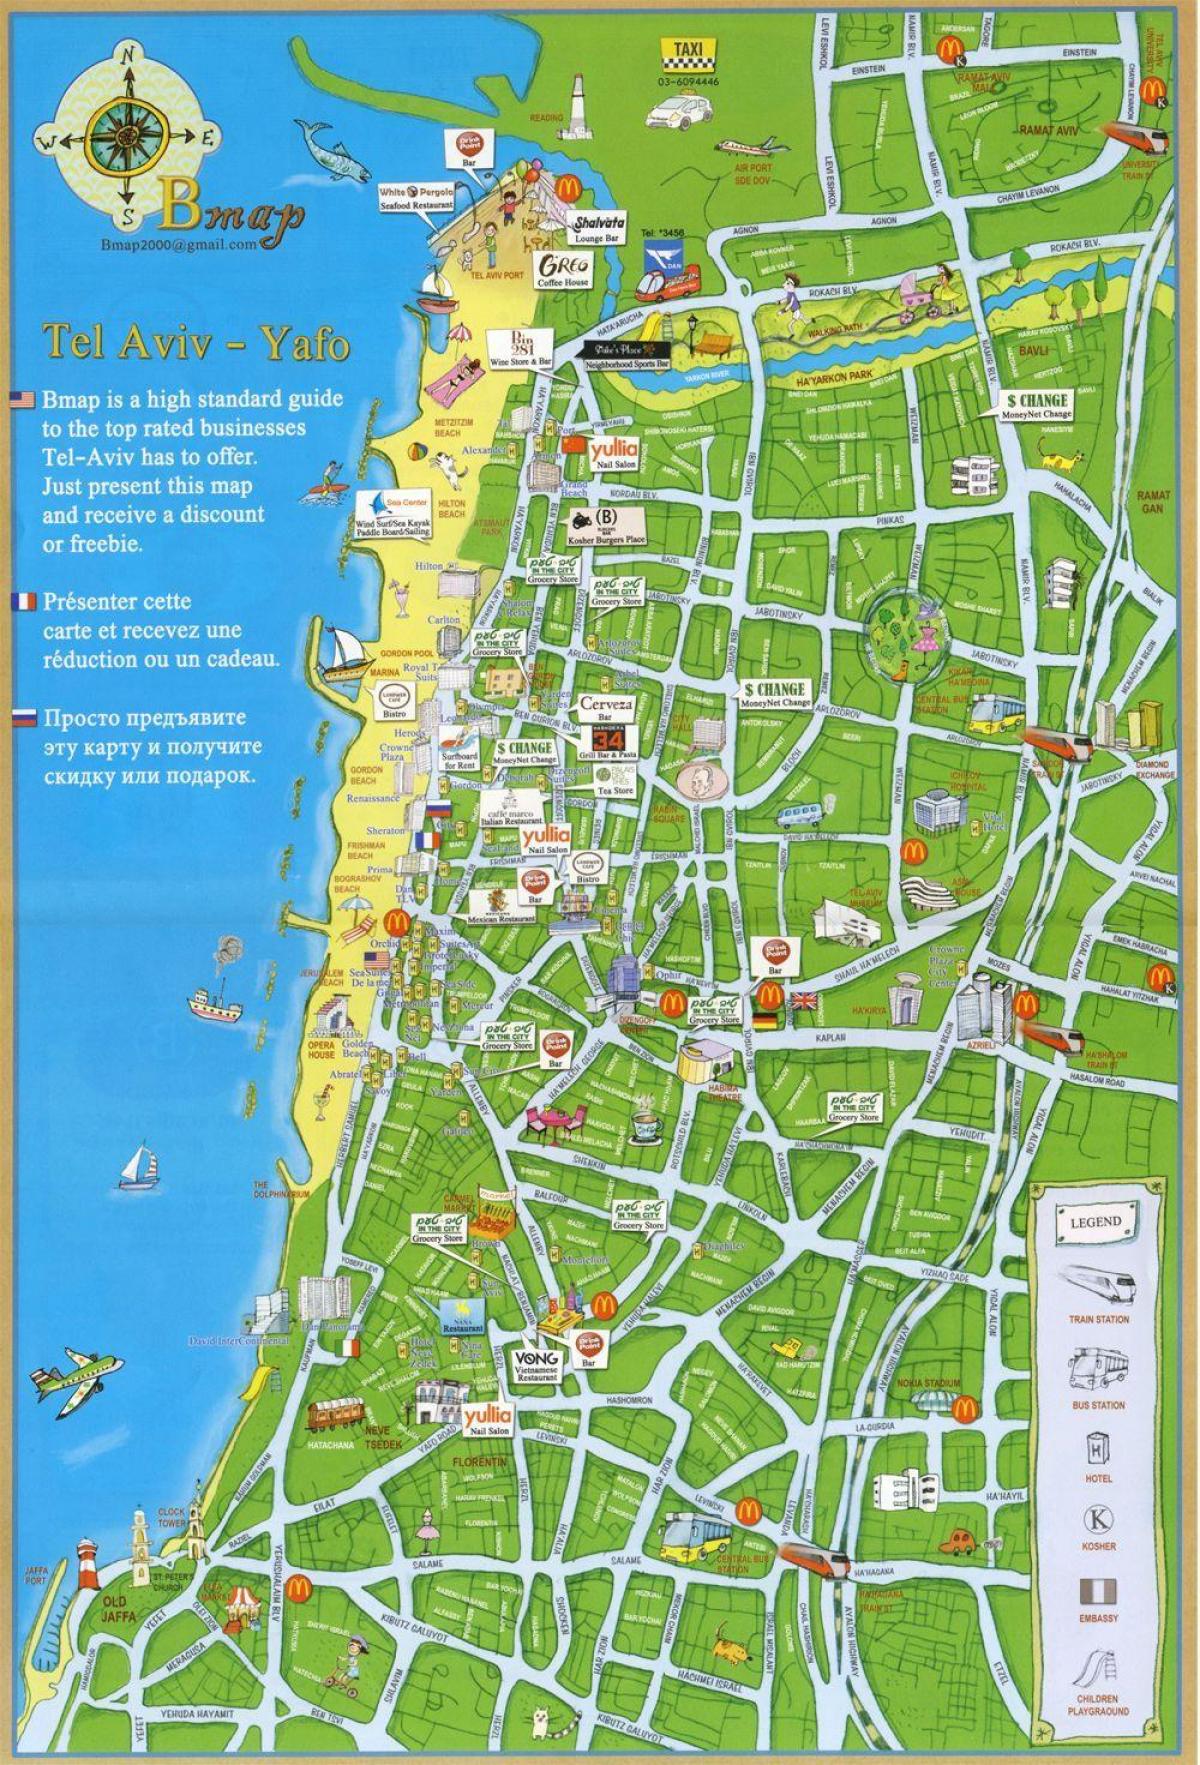 Tel Aviv attractions map